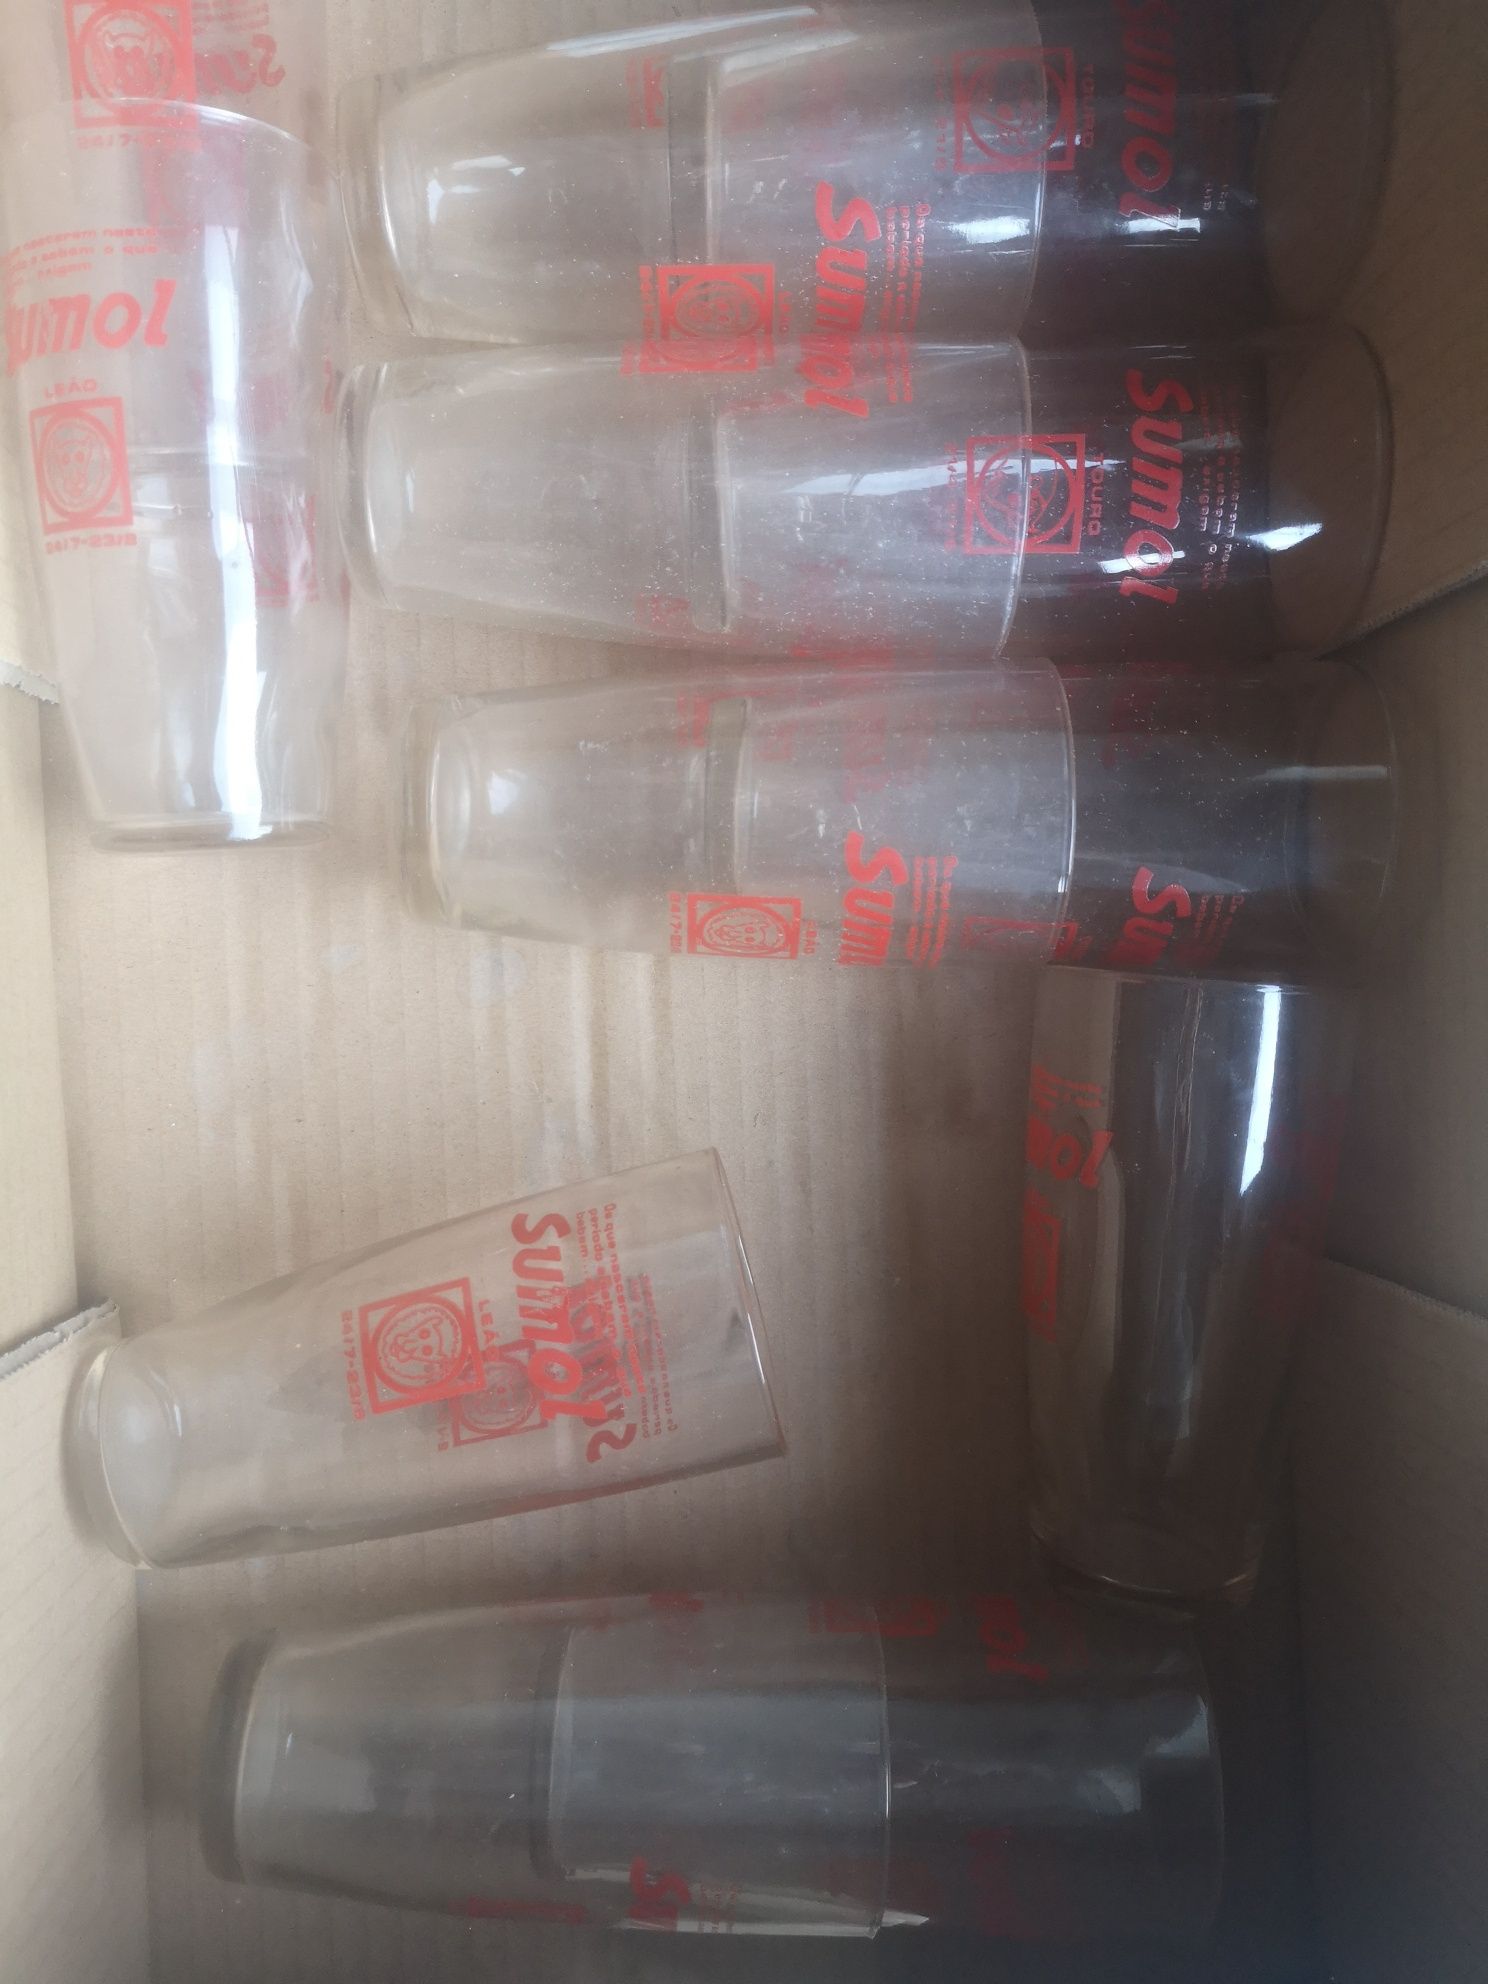 11 copos sumol vintage